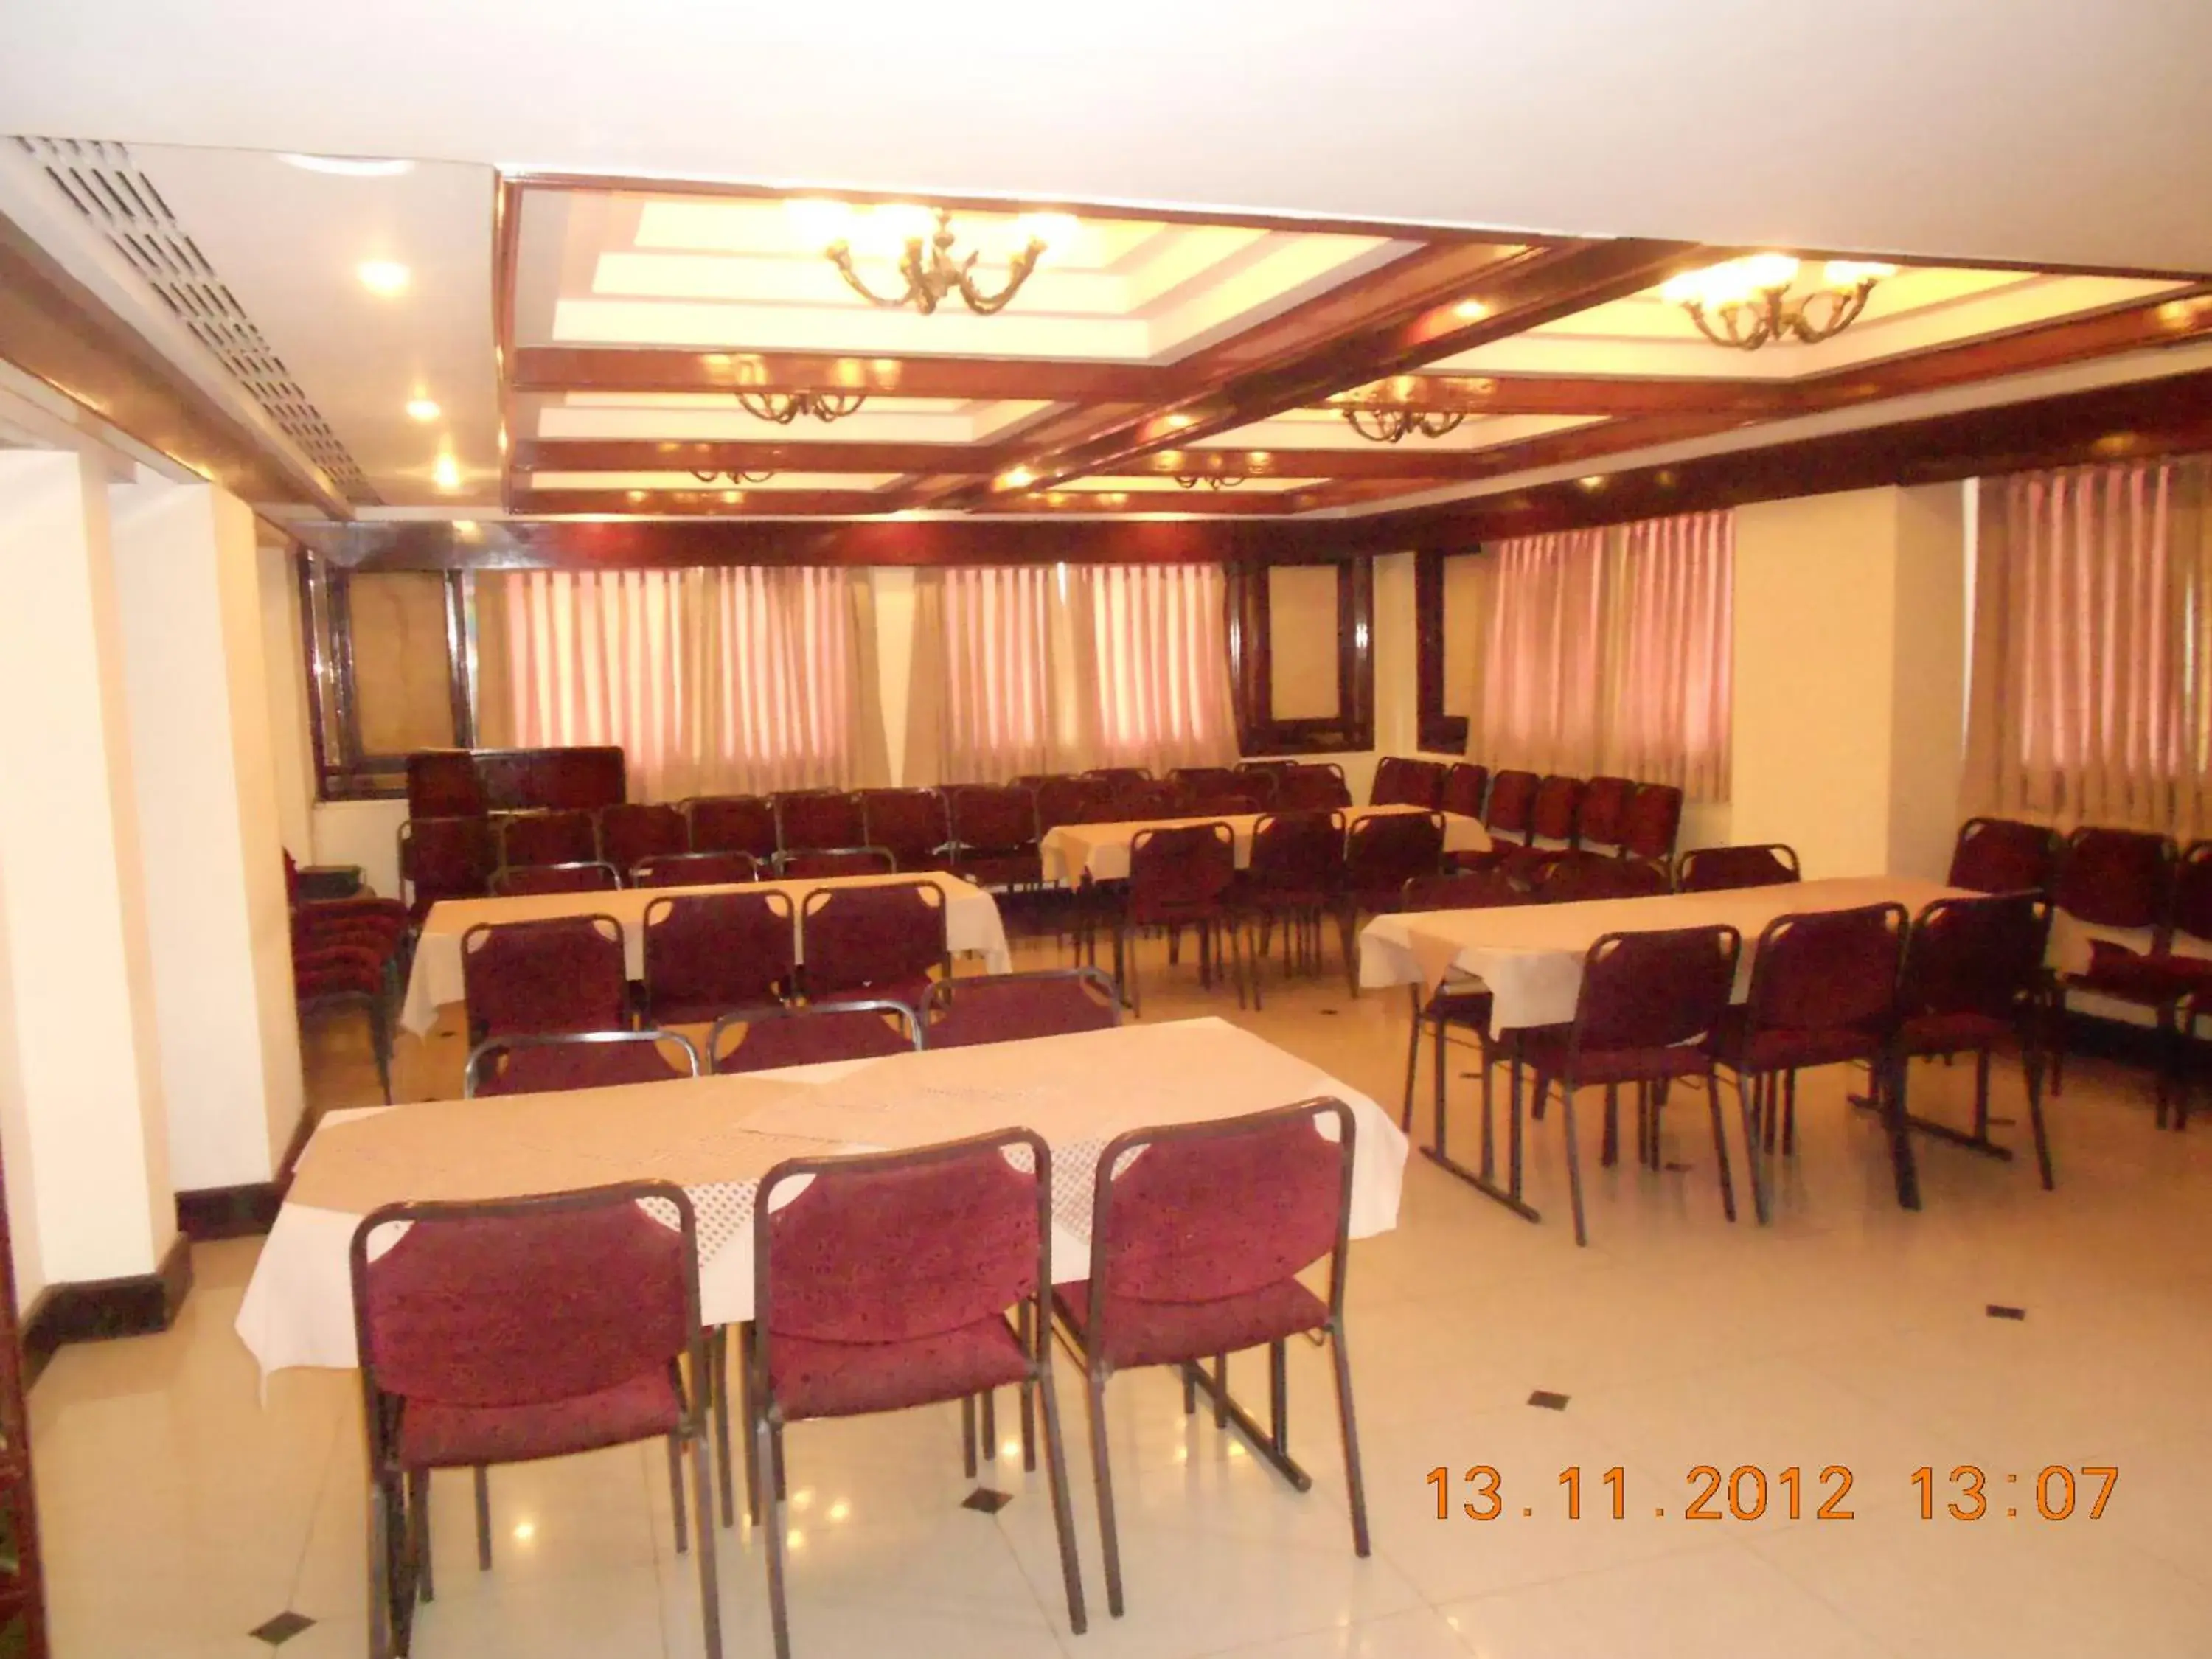 Meeting/conference room in Hotel Poonja International